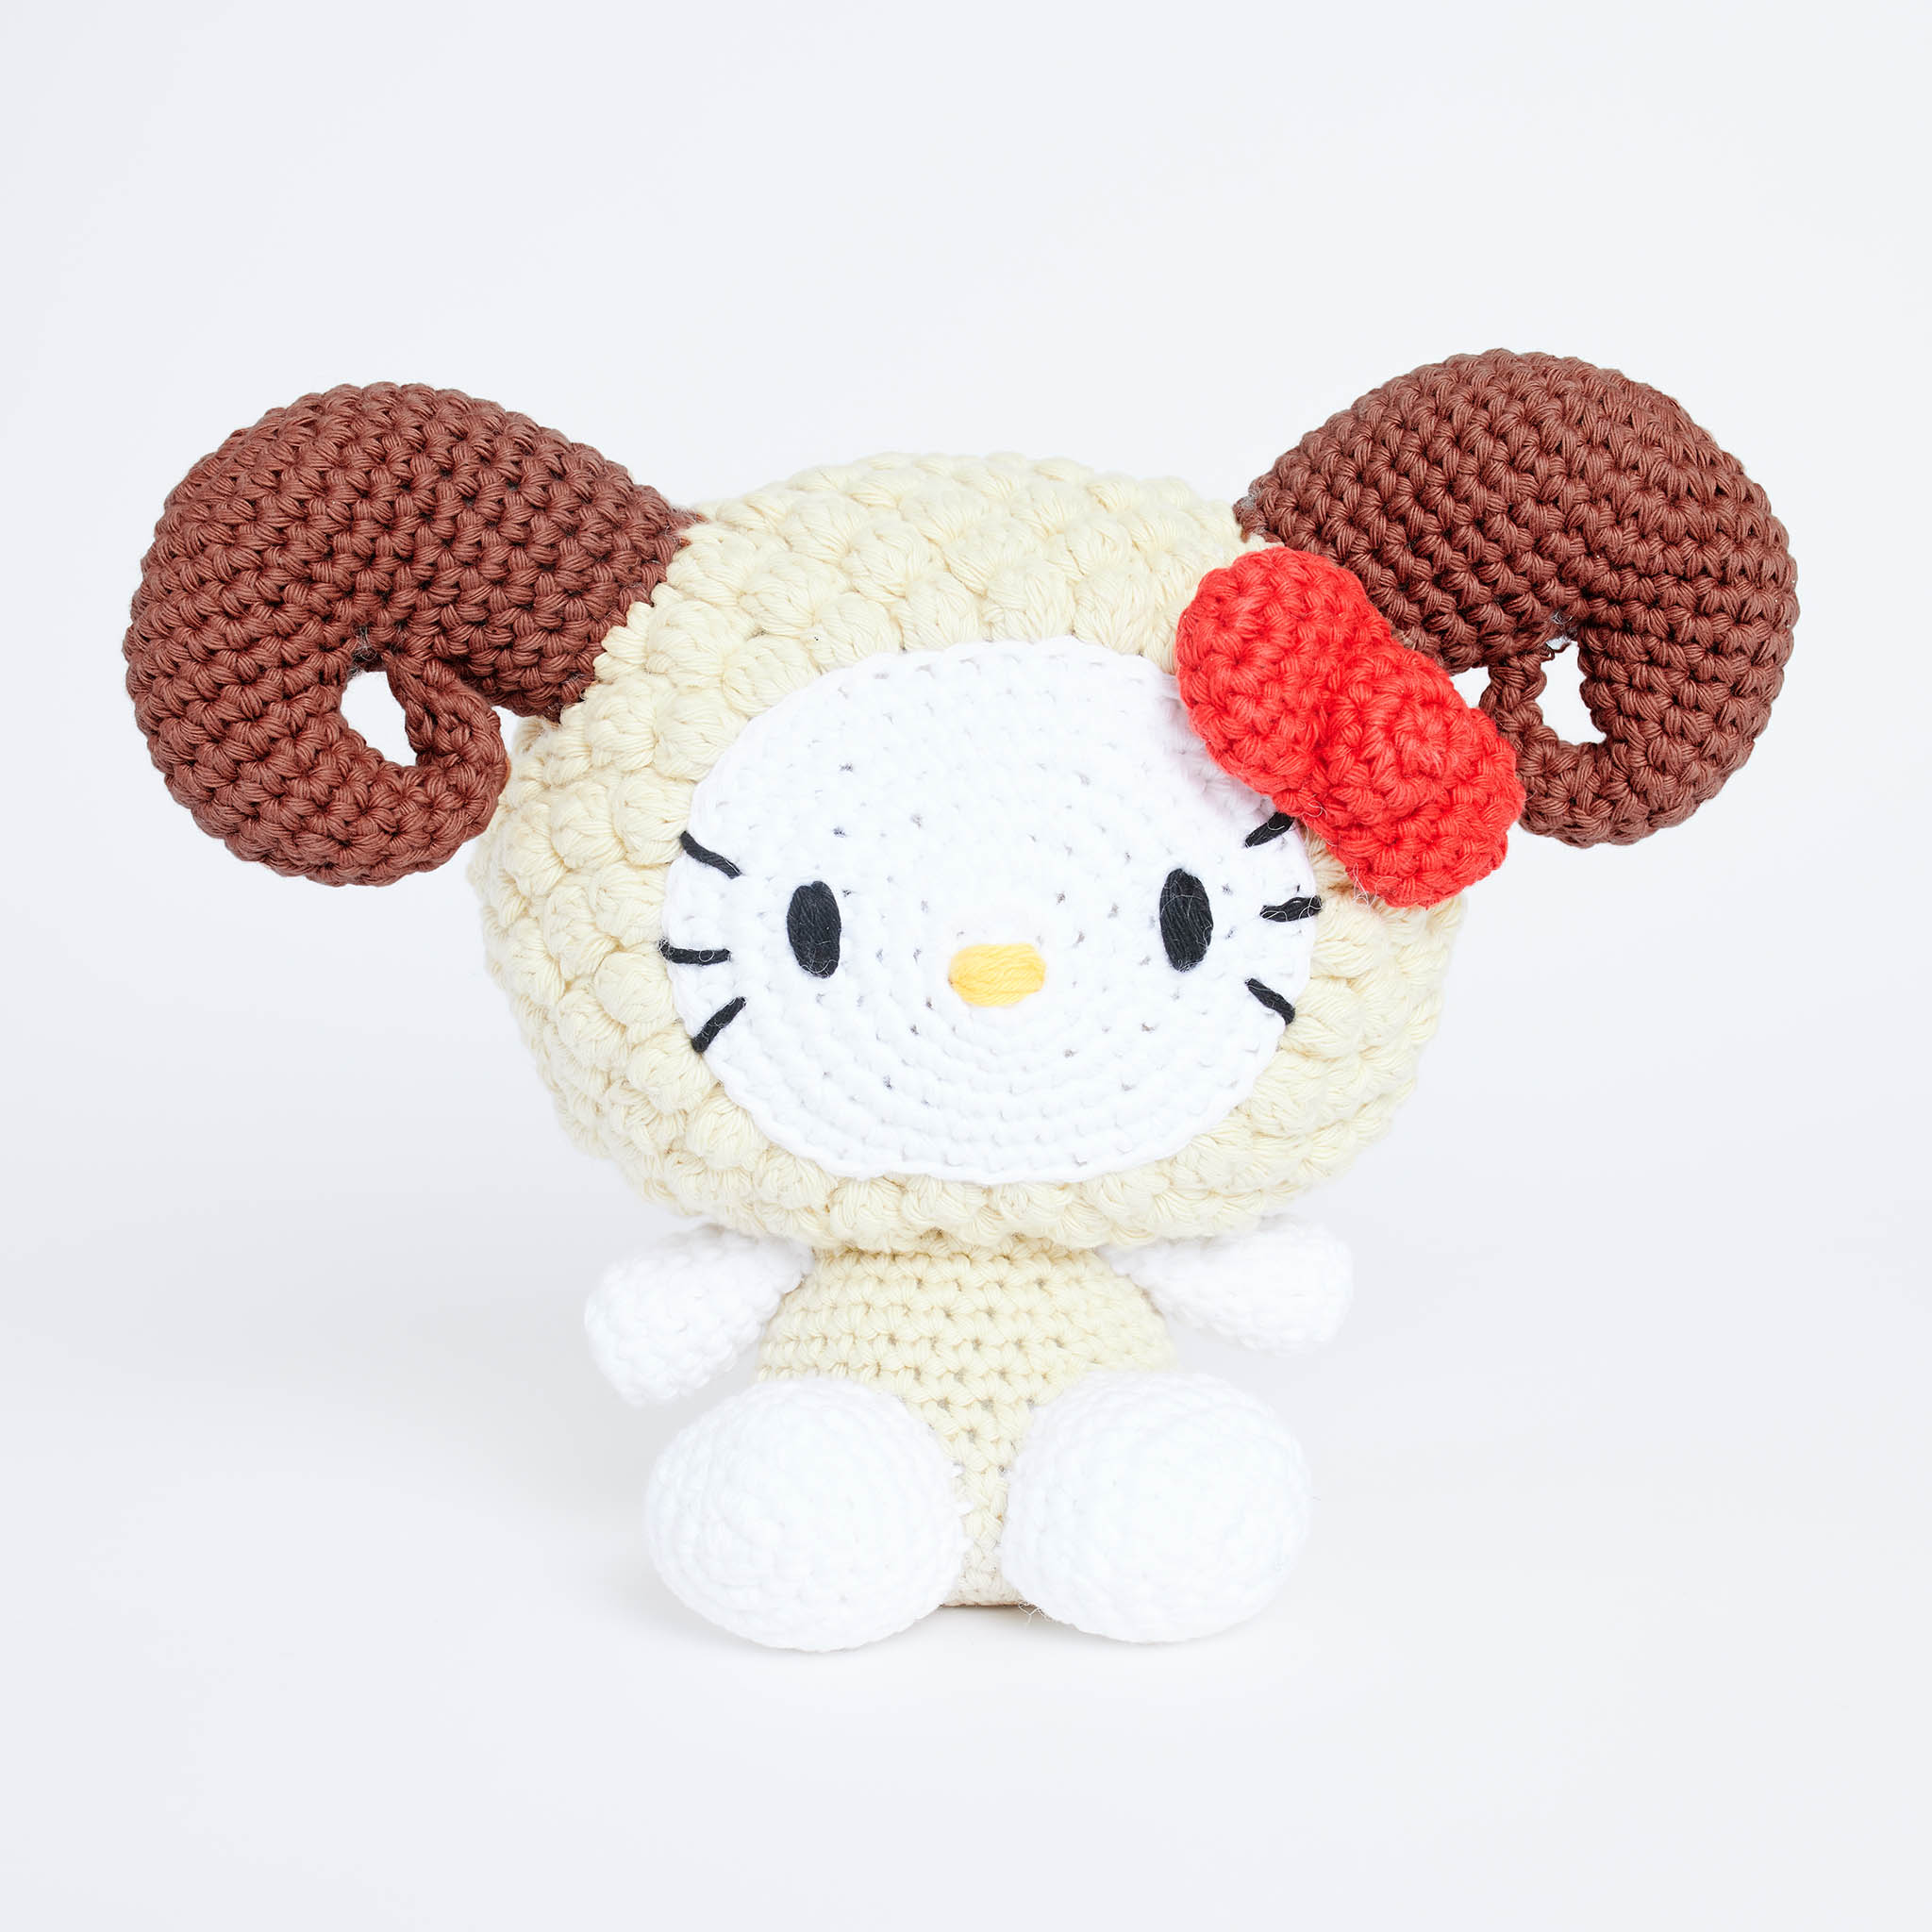 Hello Kitty Ram Amigurumi Crochet Kit